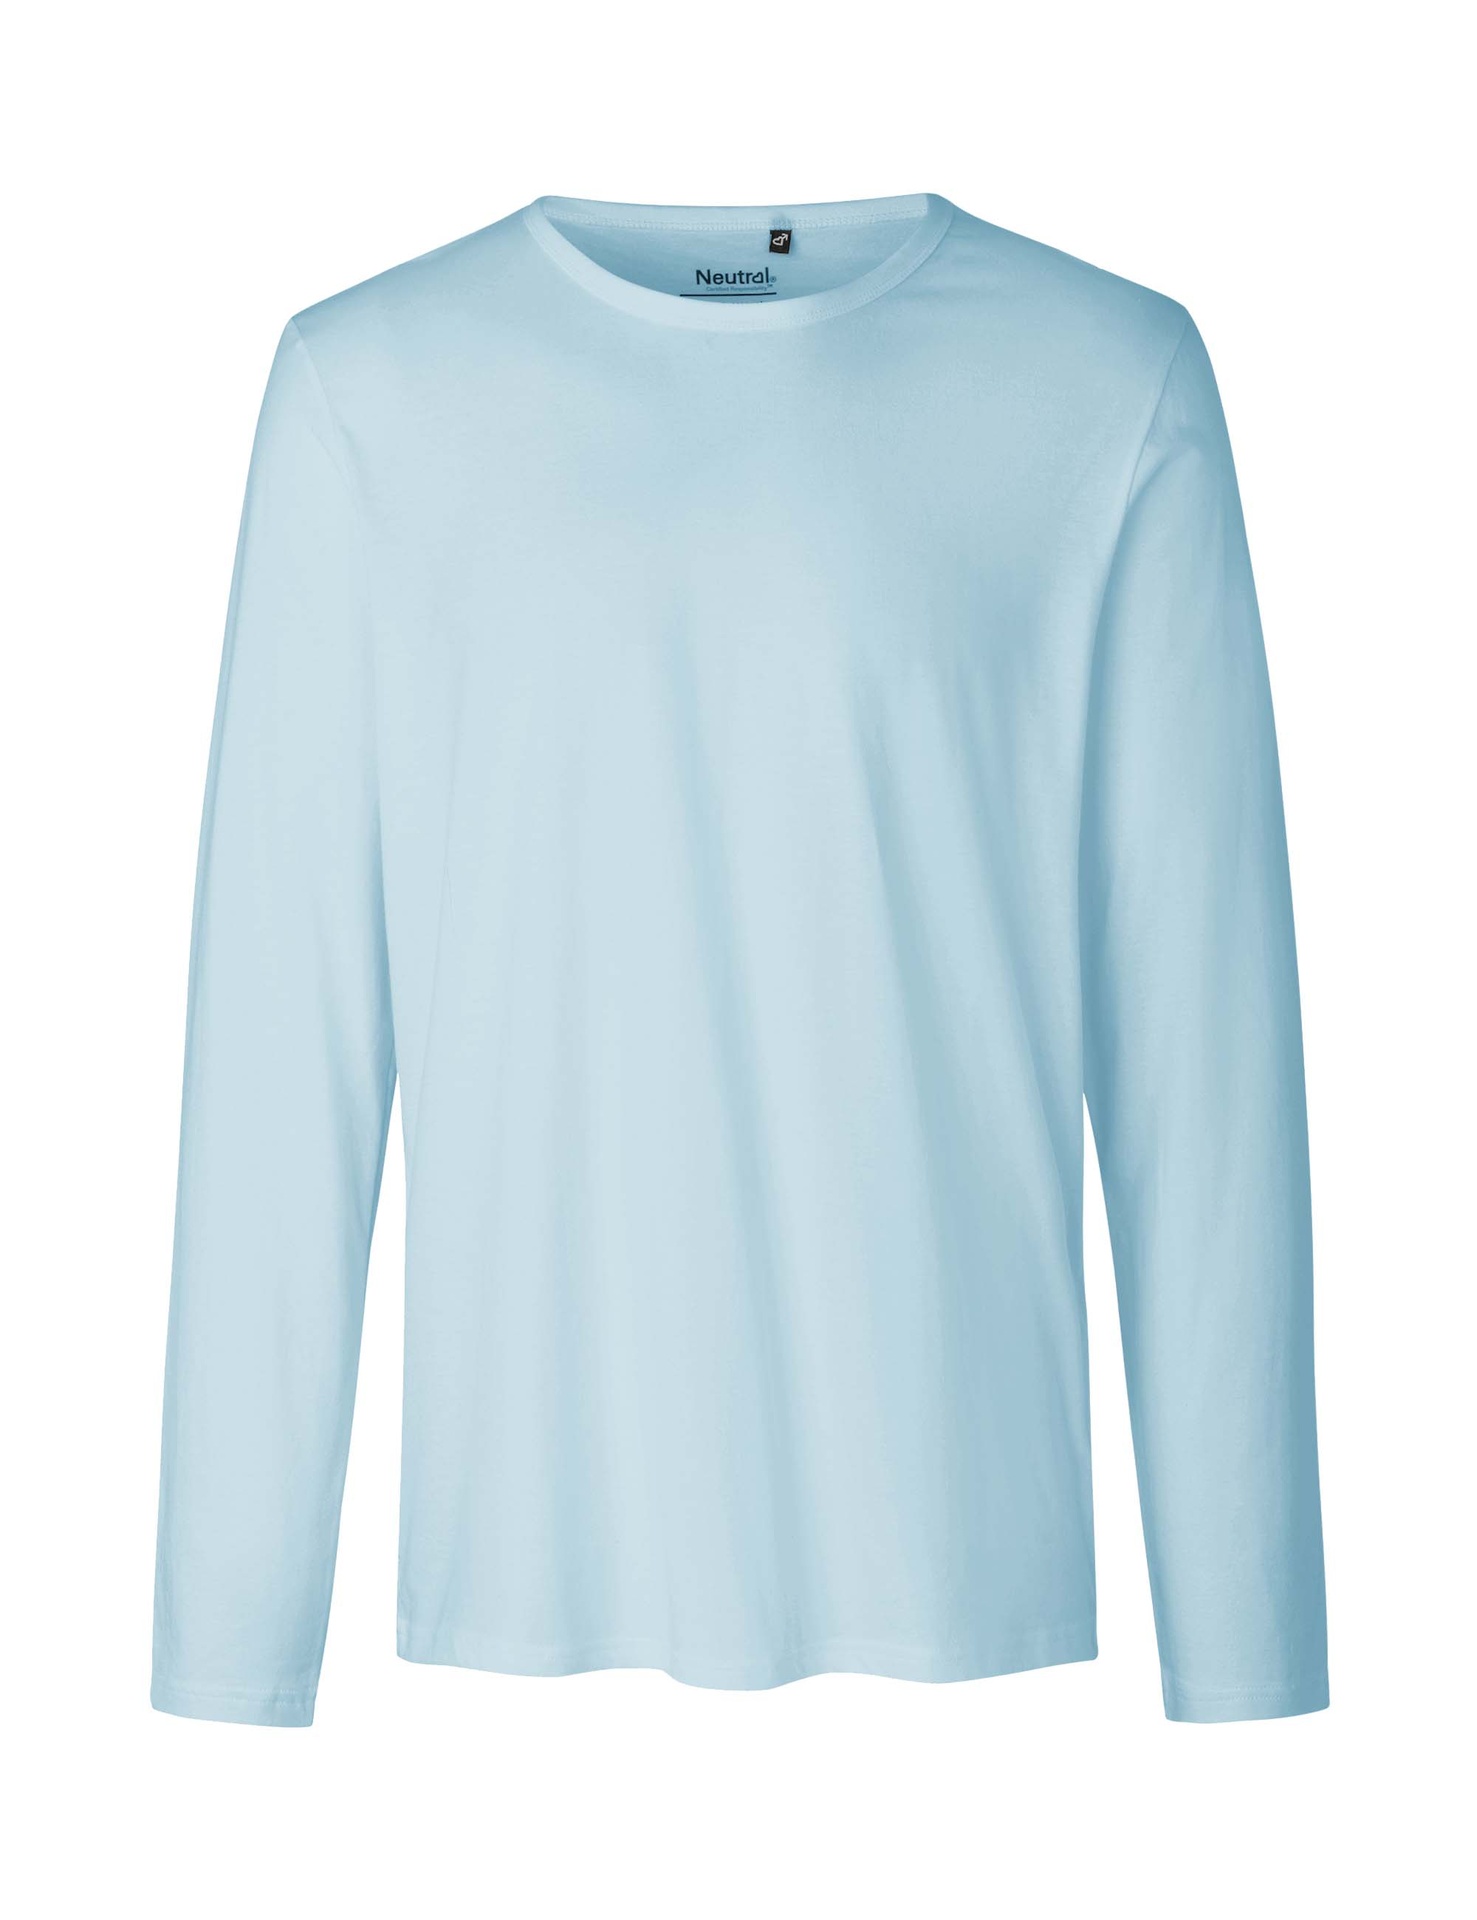 [PR/02463] Mens Long Sleeve T-Shirt (Light Blue 69, 3XL)